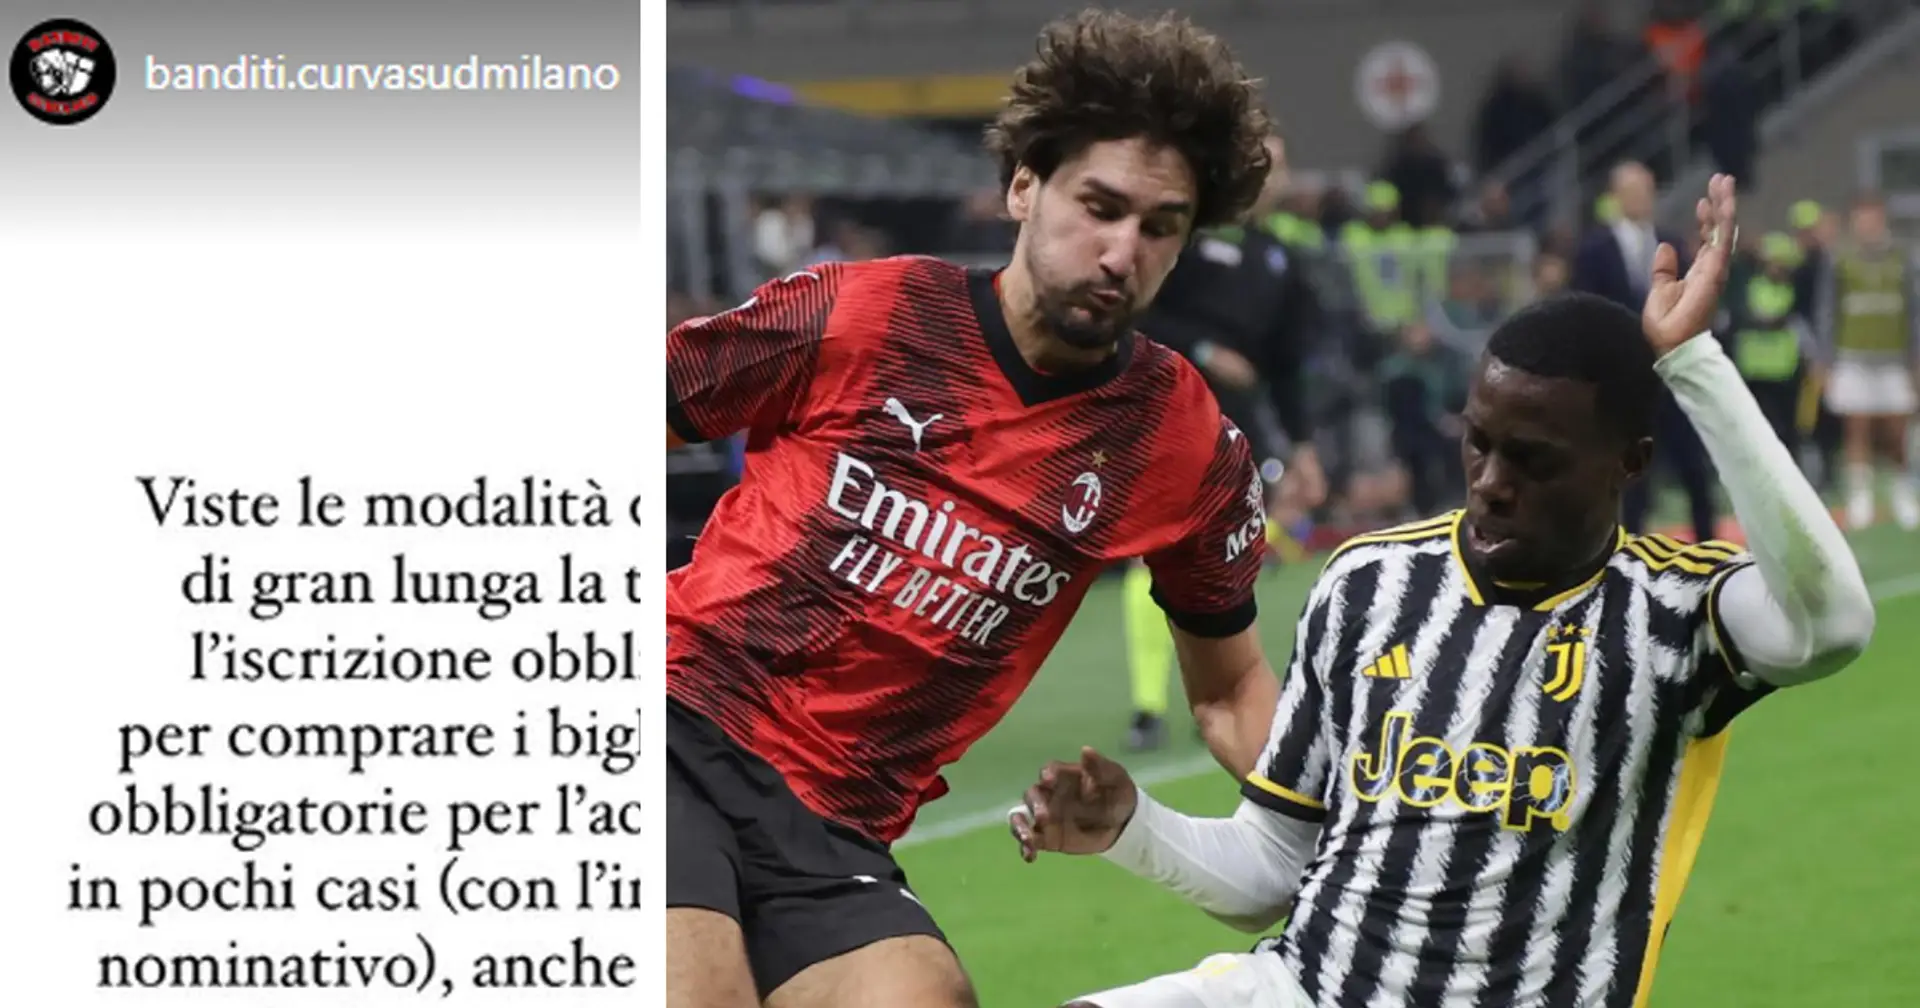 La Curva Sud del Milan non ci sarà nella trasferta contro la Juventus: la spiegazione sui social